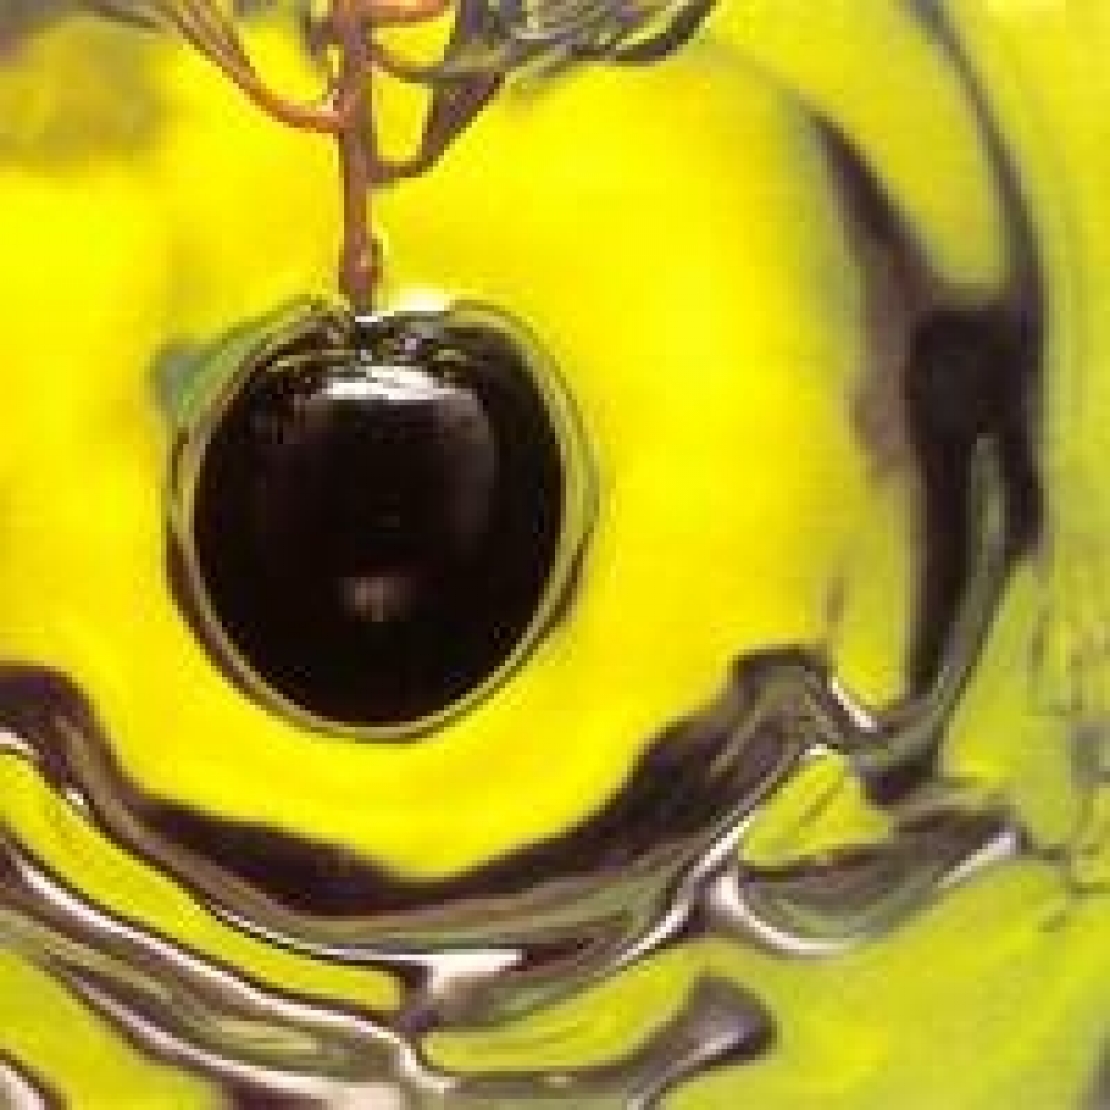 É il frantoiano la radice da cui far attecchire la “cultura di prodotto” sull'olio extra vergine d'oliva